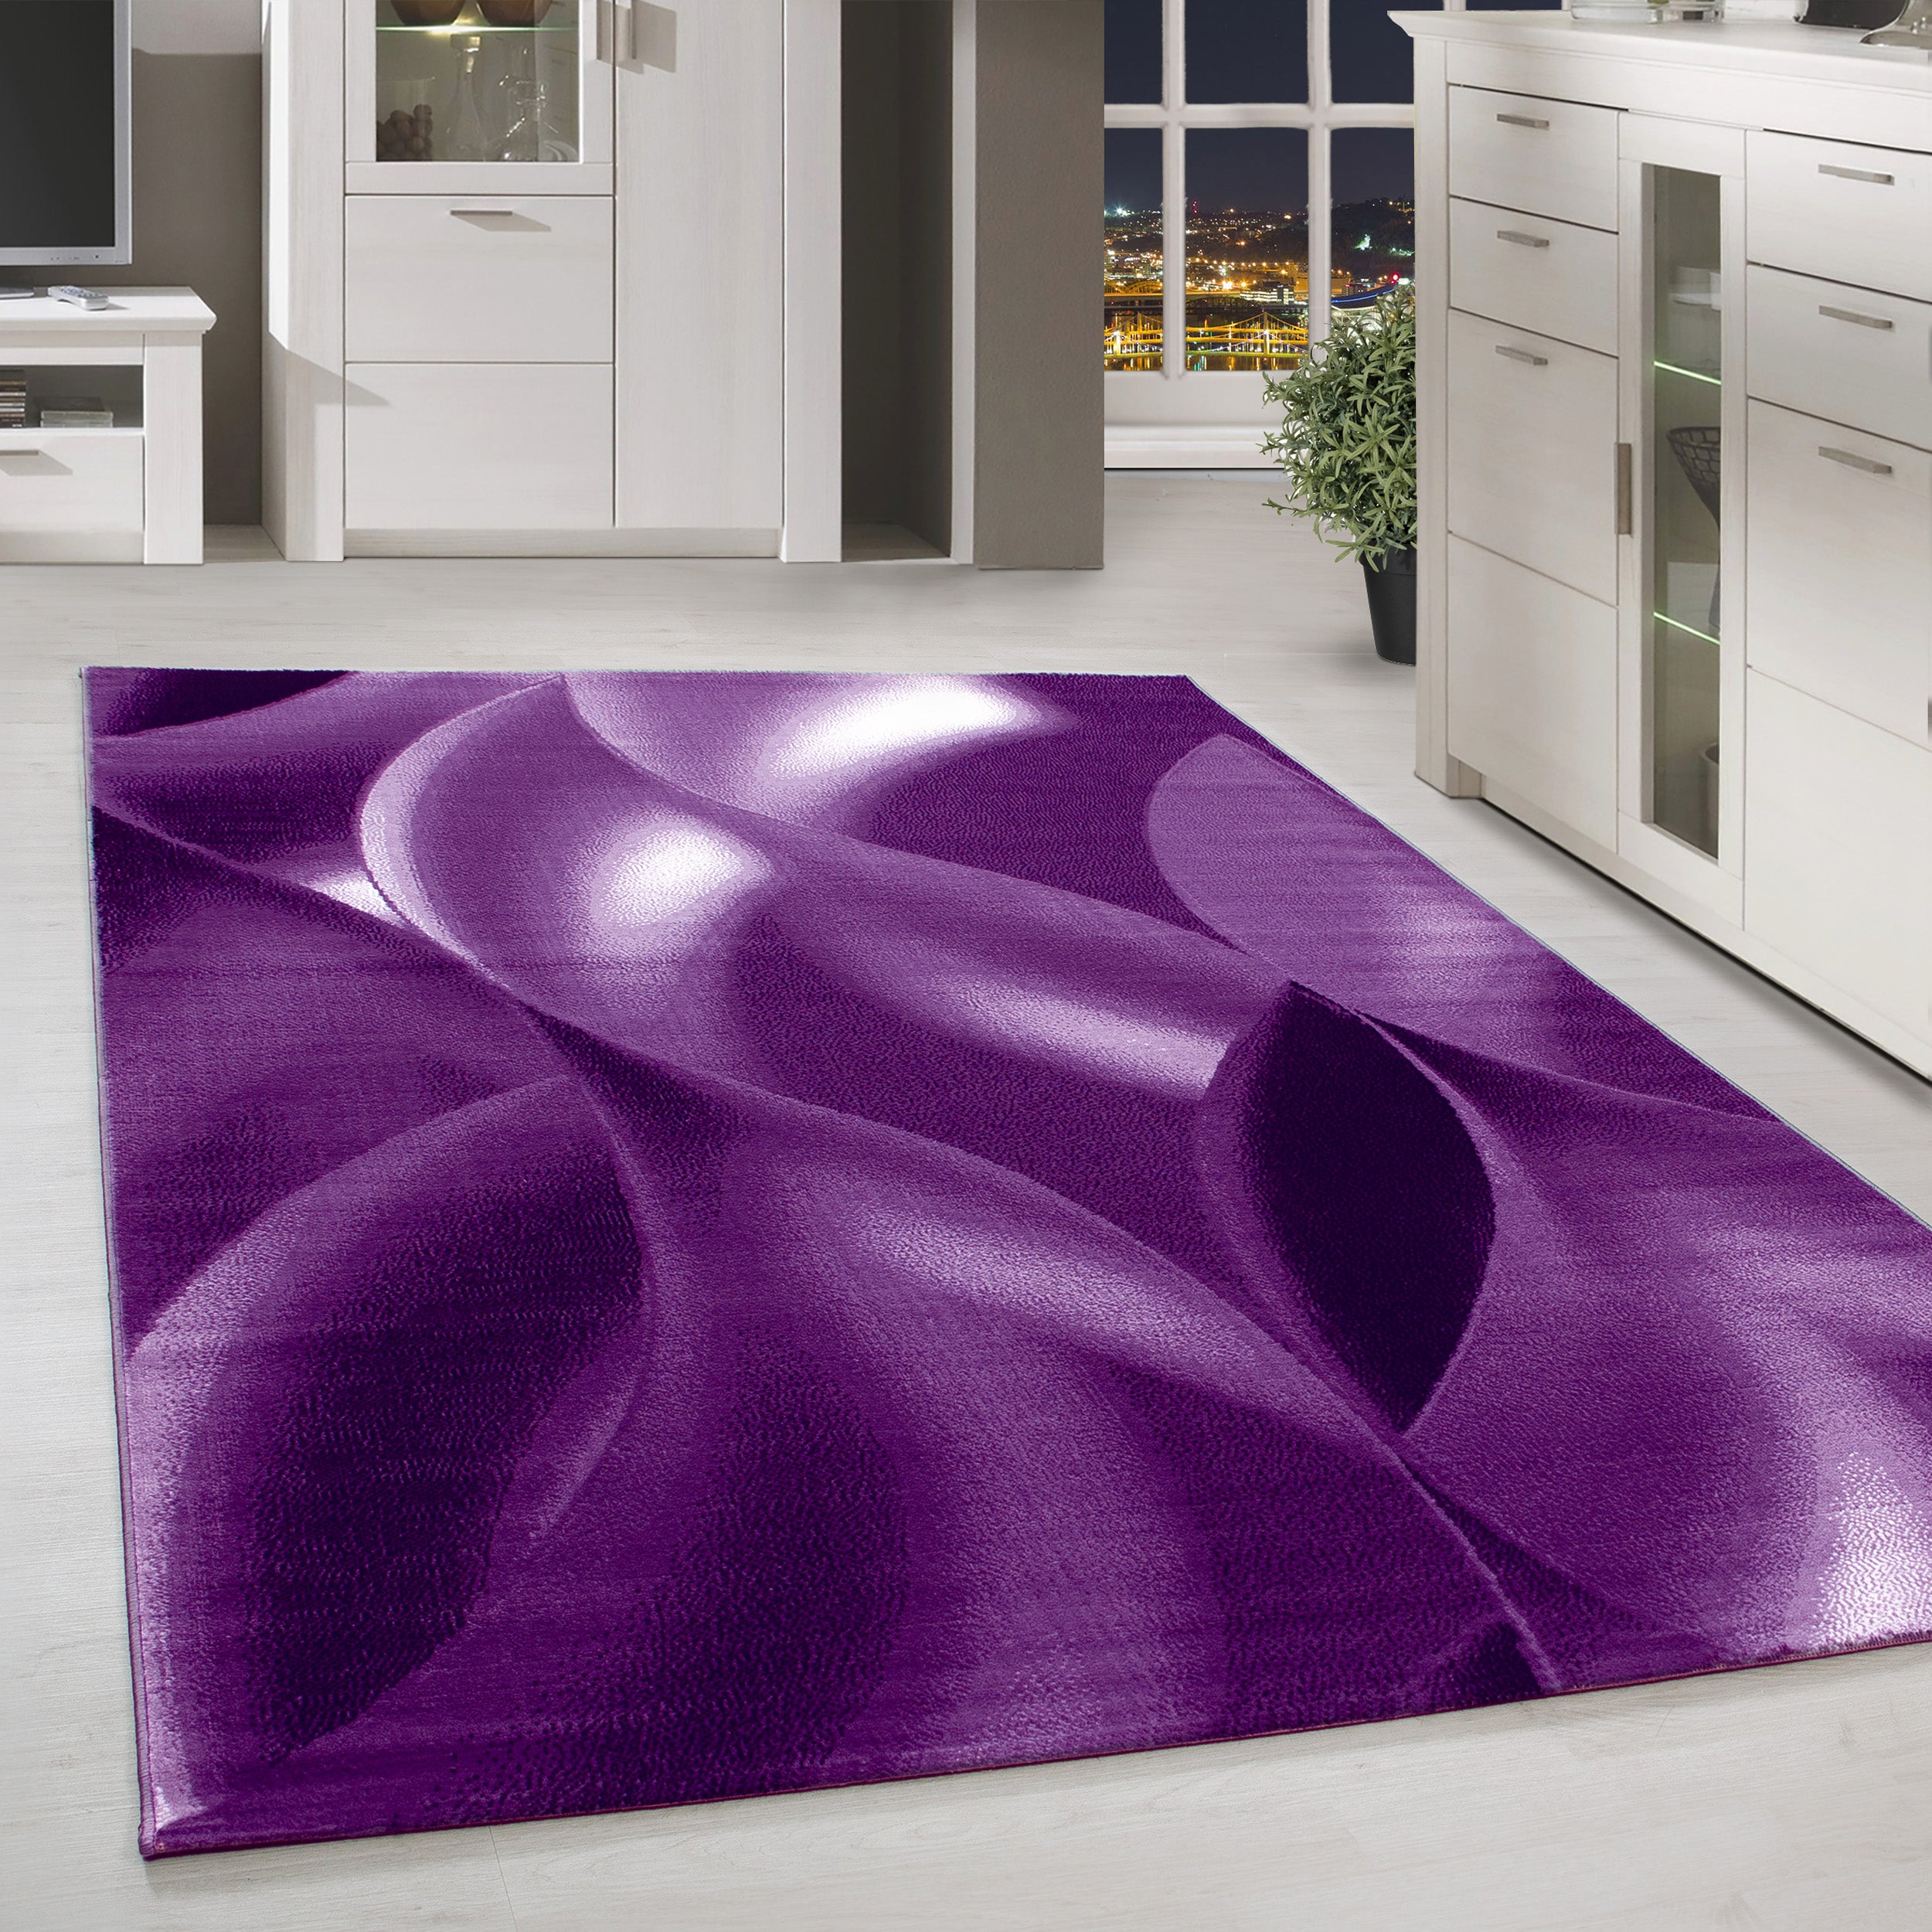 Kurzflor Teppich Design Schatten Muster Wohnzimmerteppich Lila Meliert